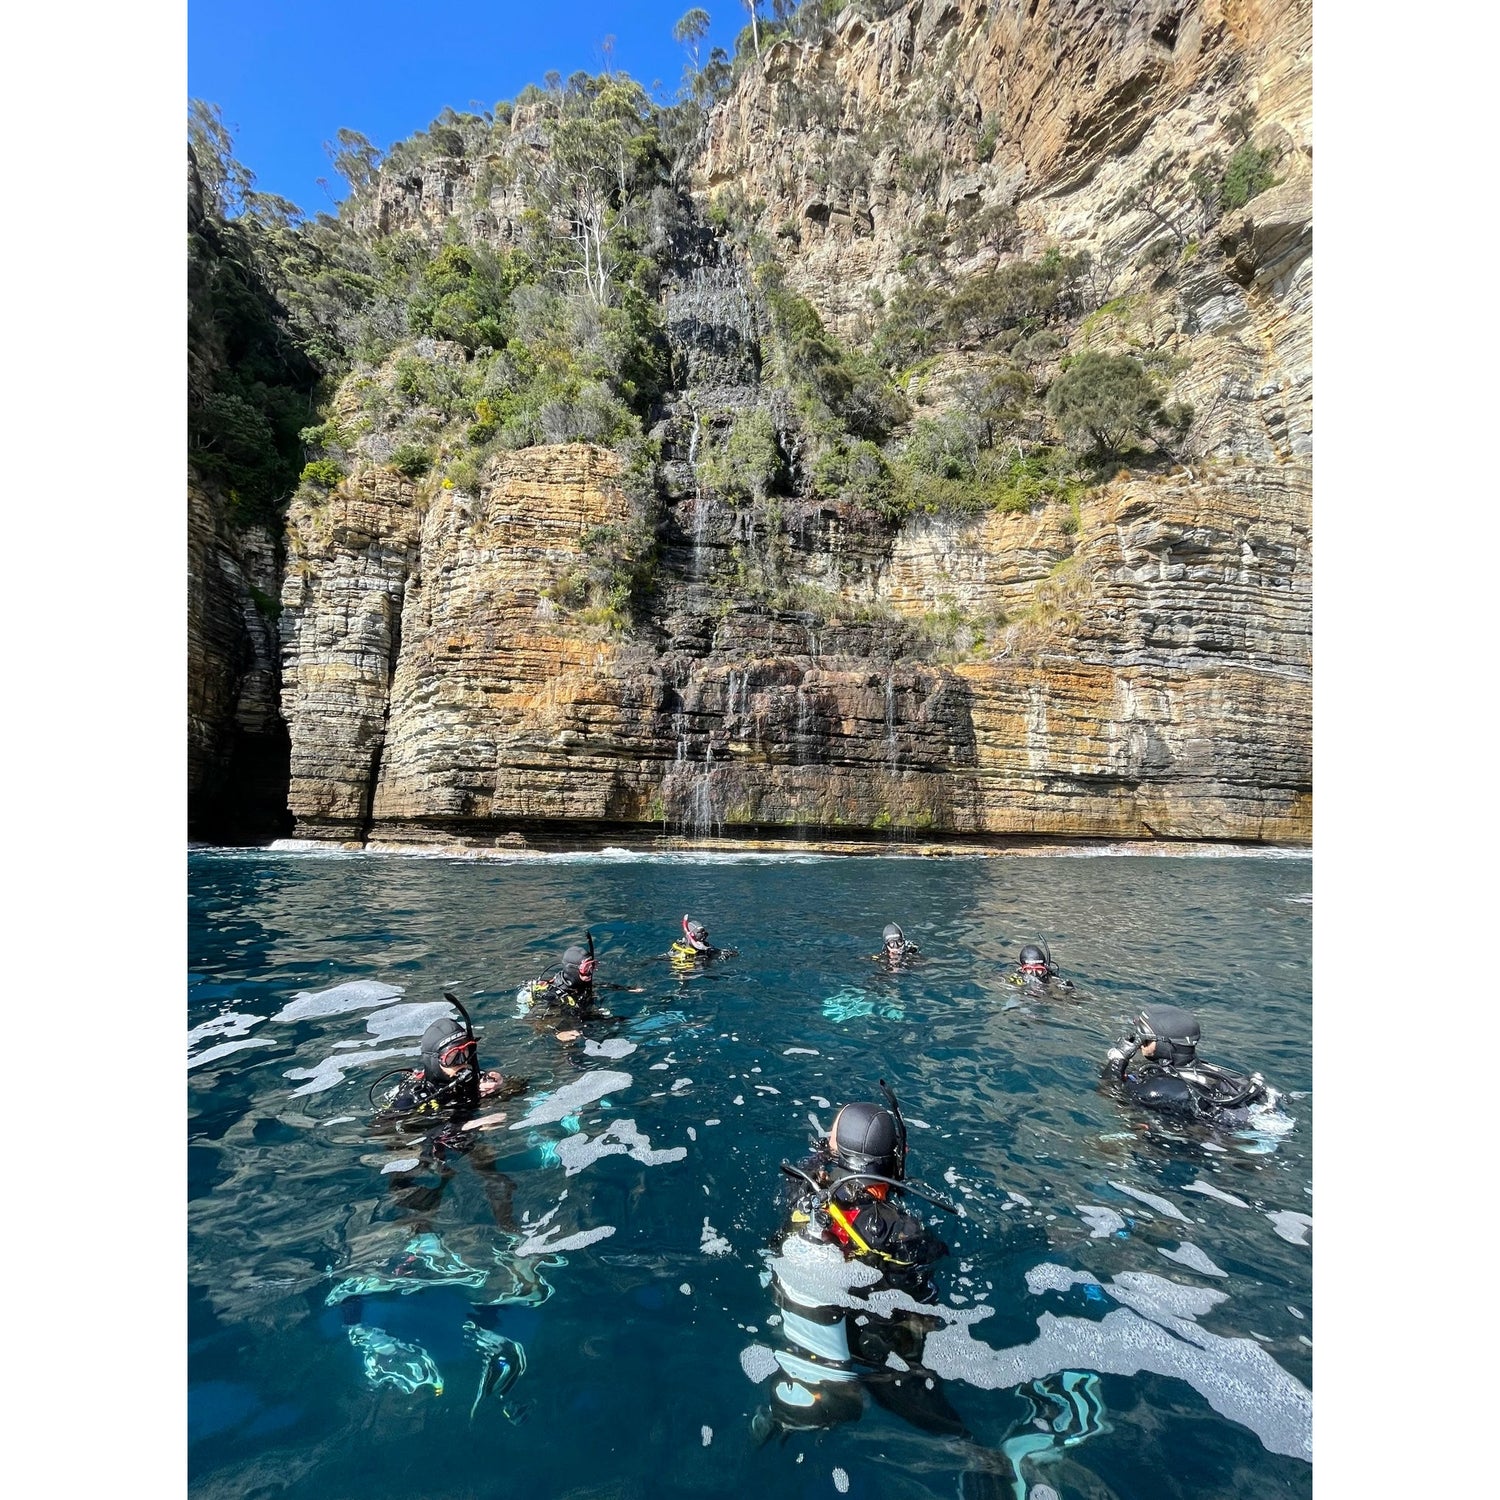 PADI Open Water Dive Course - Go Dive Tasmania